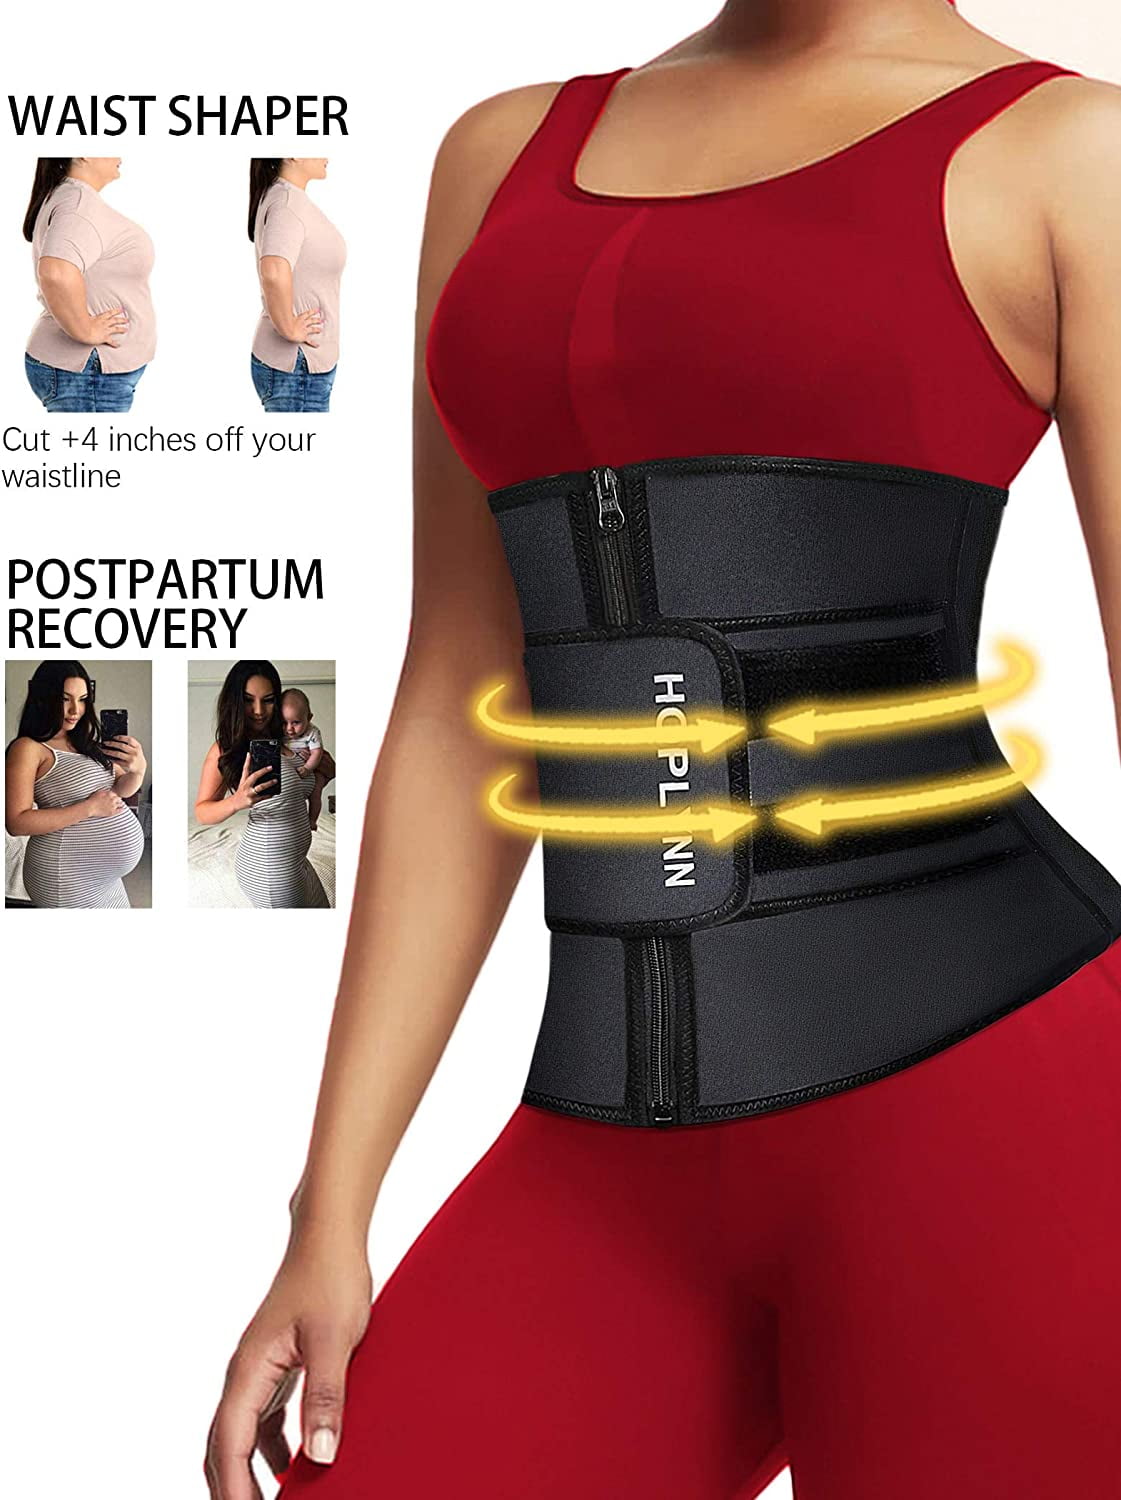 HOPLYNN Neoprene Sweat Waist Trainer for Women Weight Loss Waist Cinchers Trimmer Corset Belt for Women Postpartum